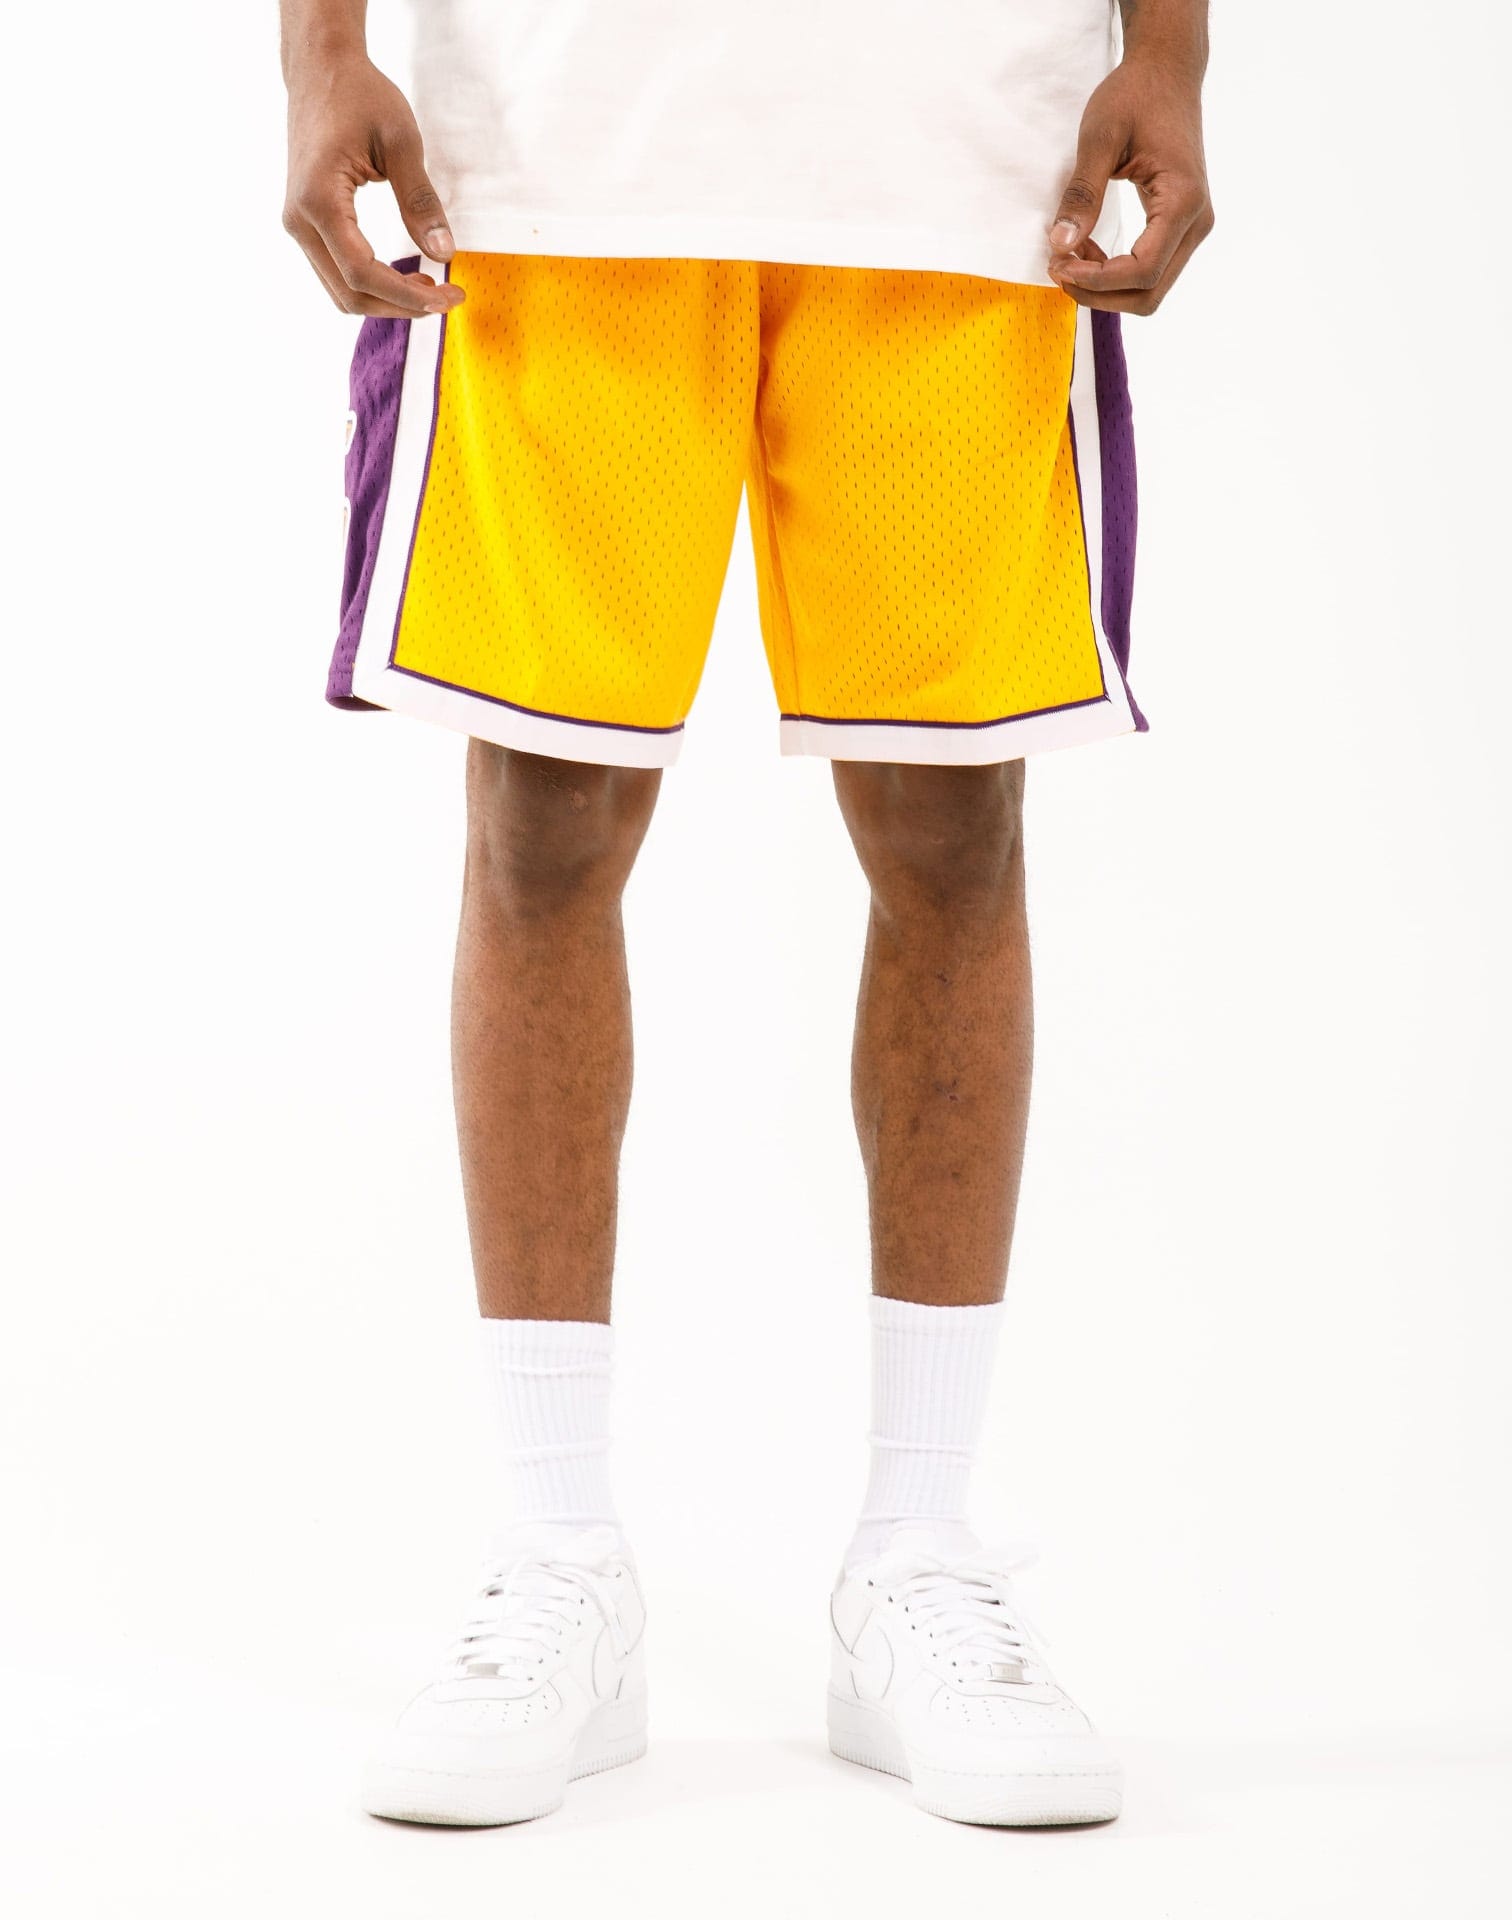 Mitchell & Ness Swingman Lakers Basketball Shorts